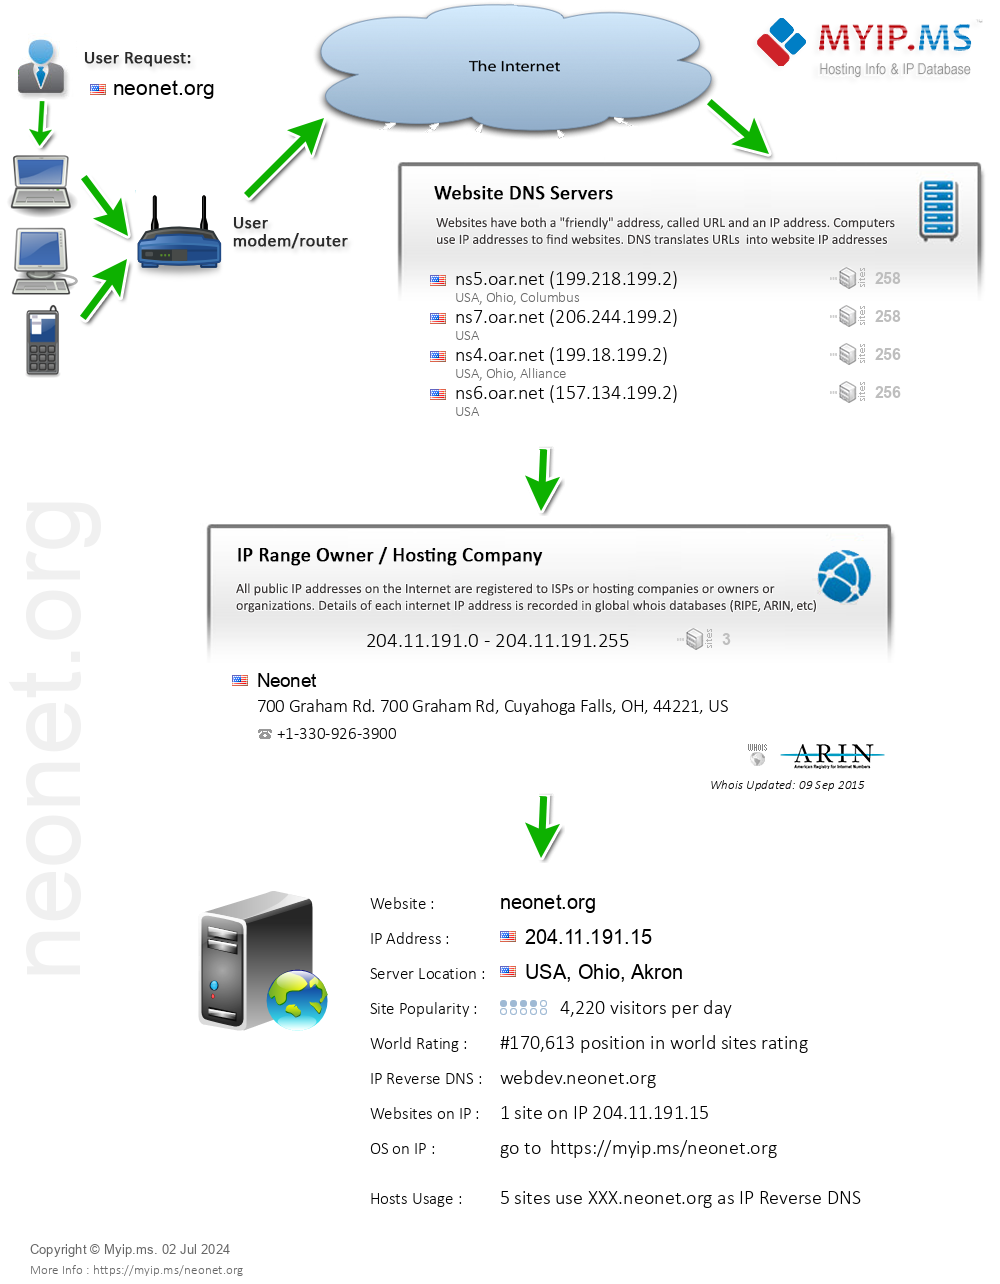 Neonet.org - Website Hosting Visual IP Diagram